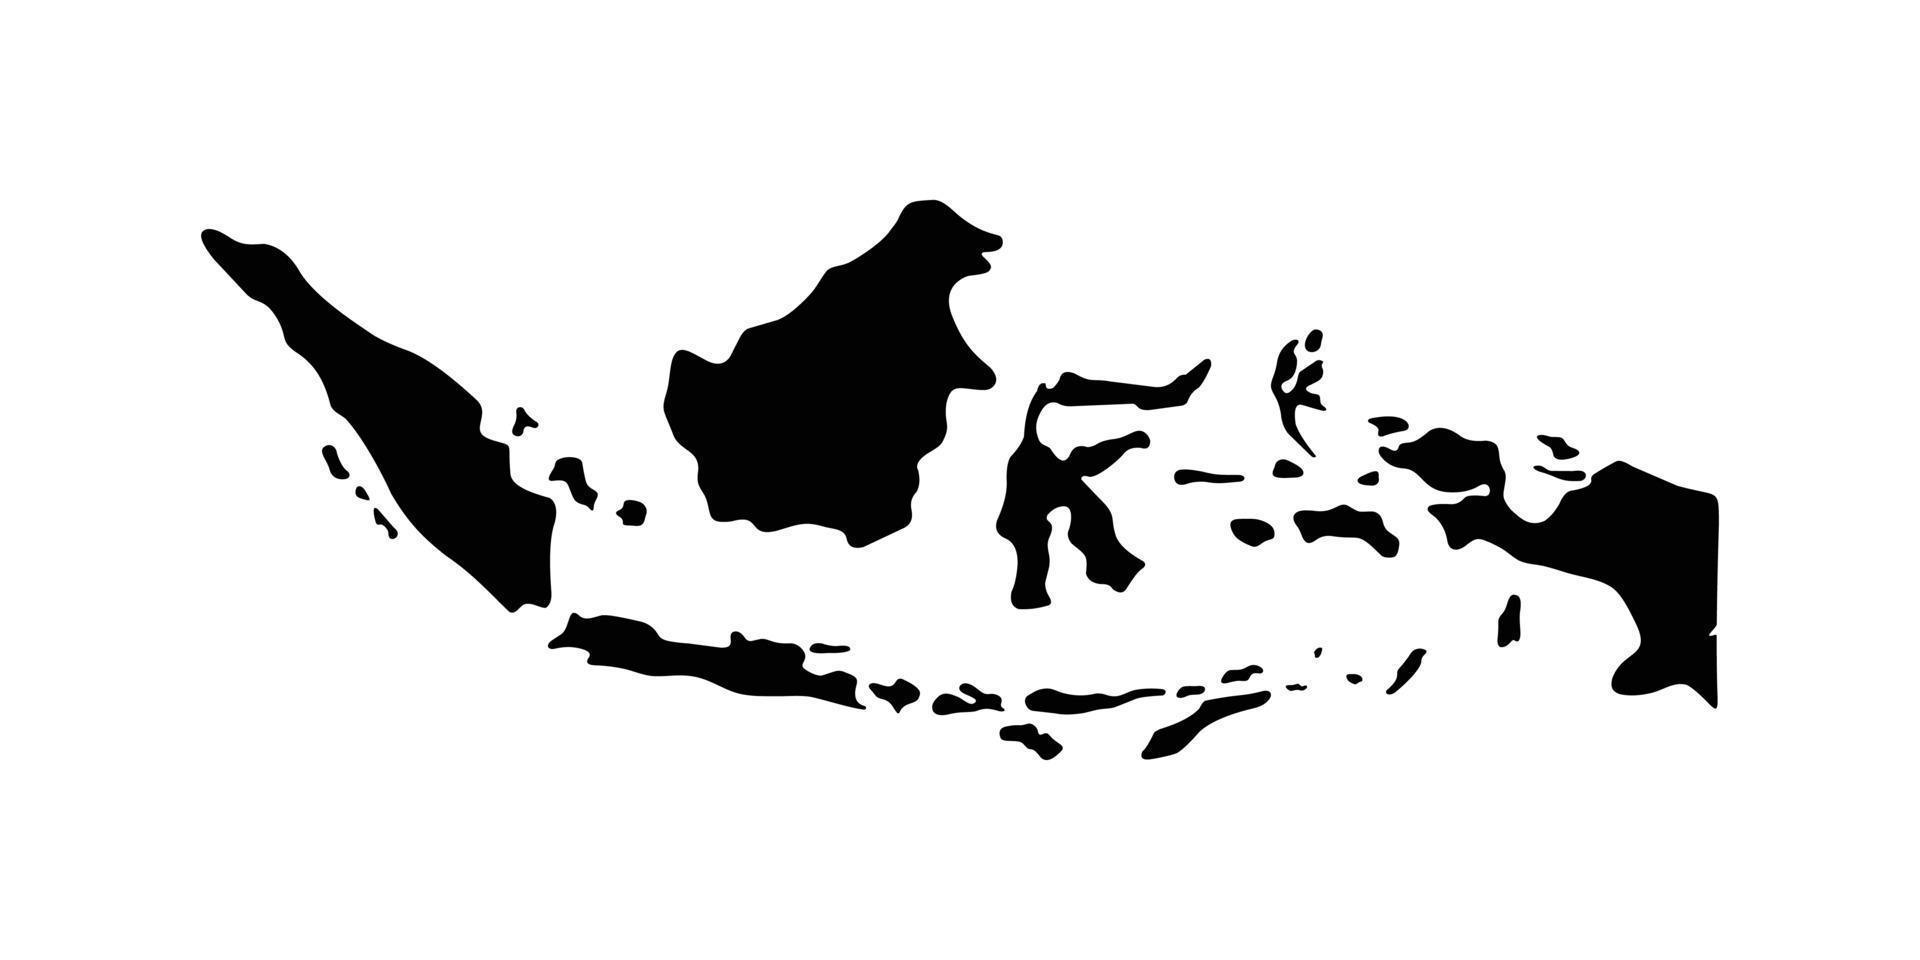 Indonesië kaart ontwerp vector illustratie